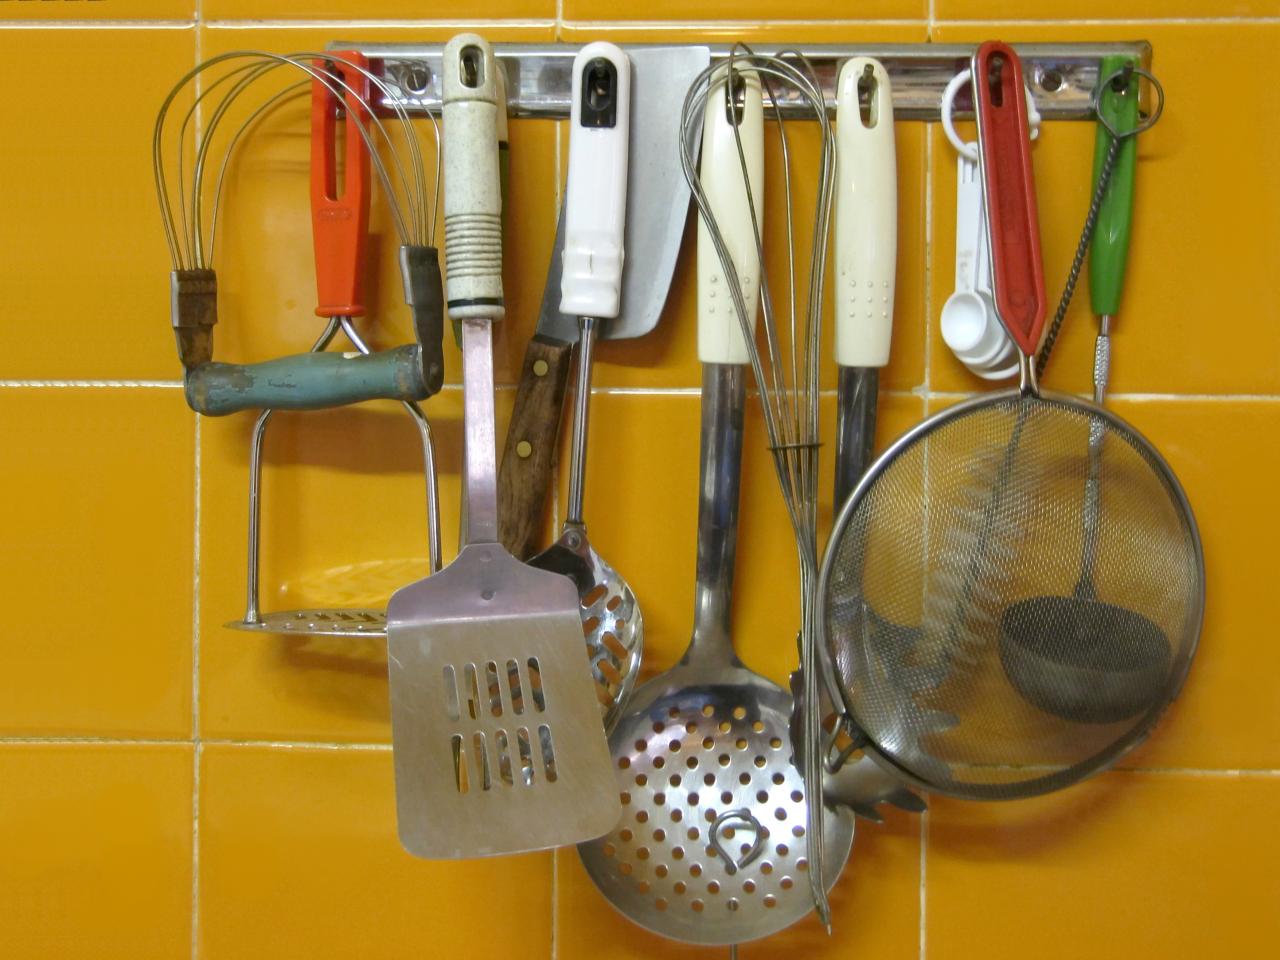 ادوات المطبخ كاملة بالصور